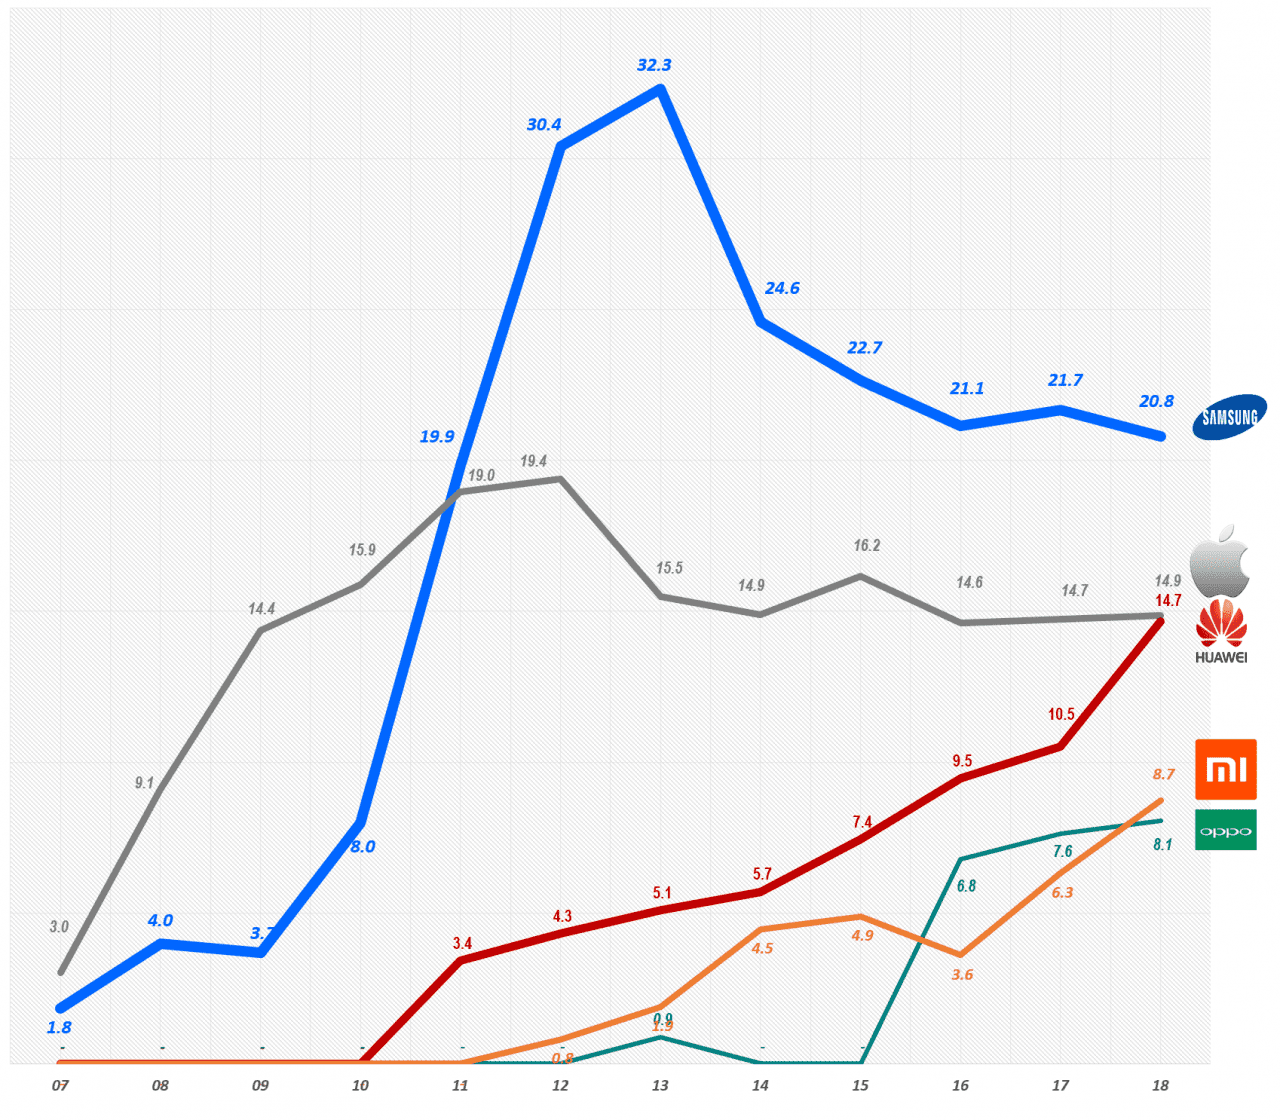 연도별 스마트폰 시장 점유율 추이(2007년 ~ 2018년) Yearly Smartphone Market share trend, Data Source - IDC, Graph by Happist